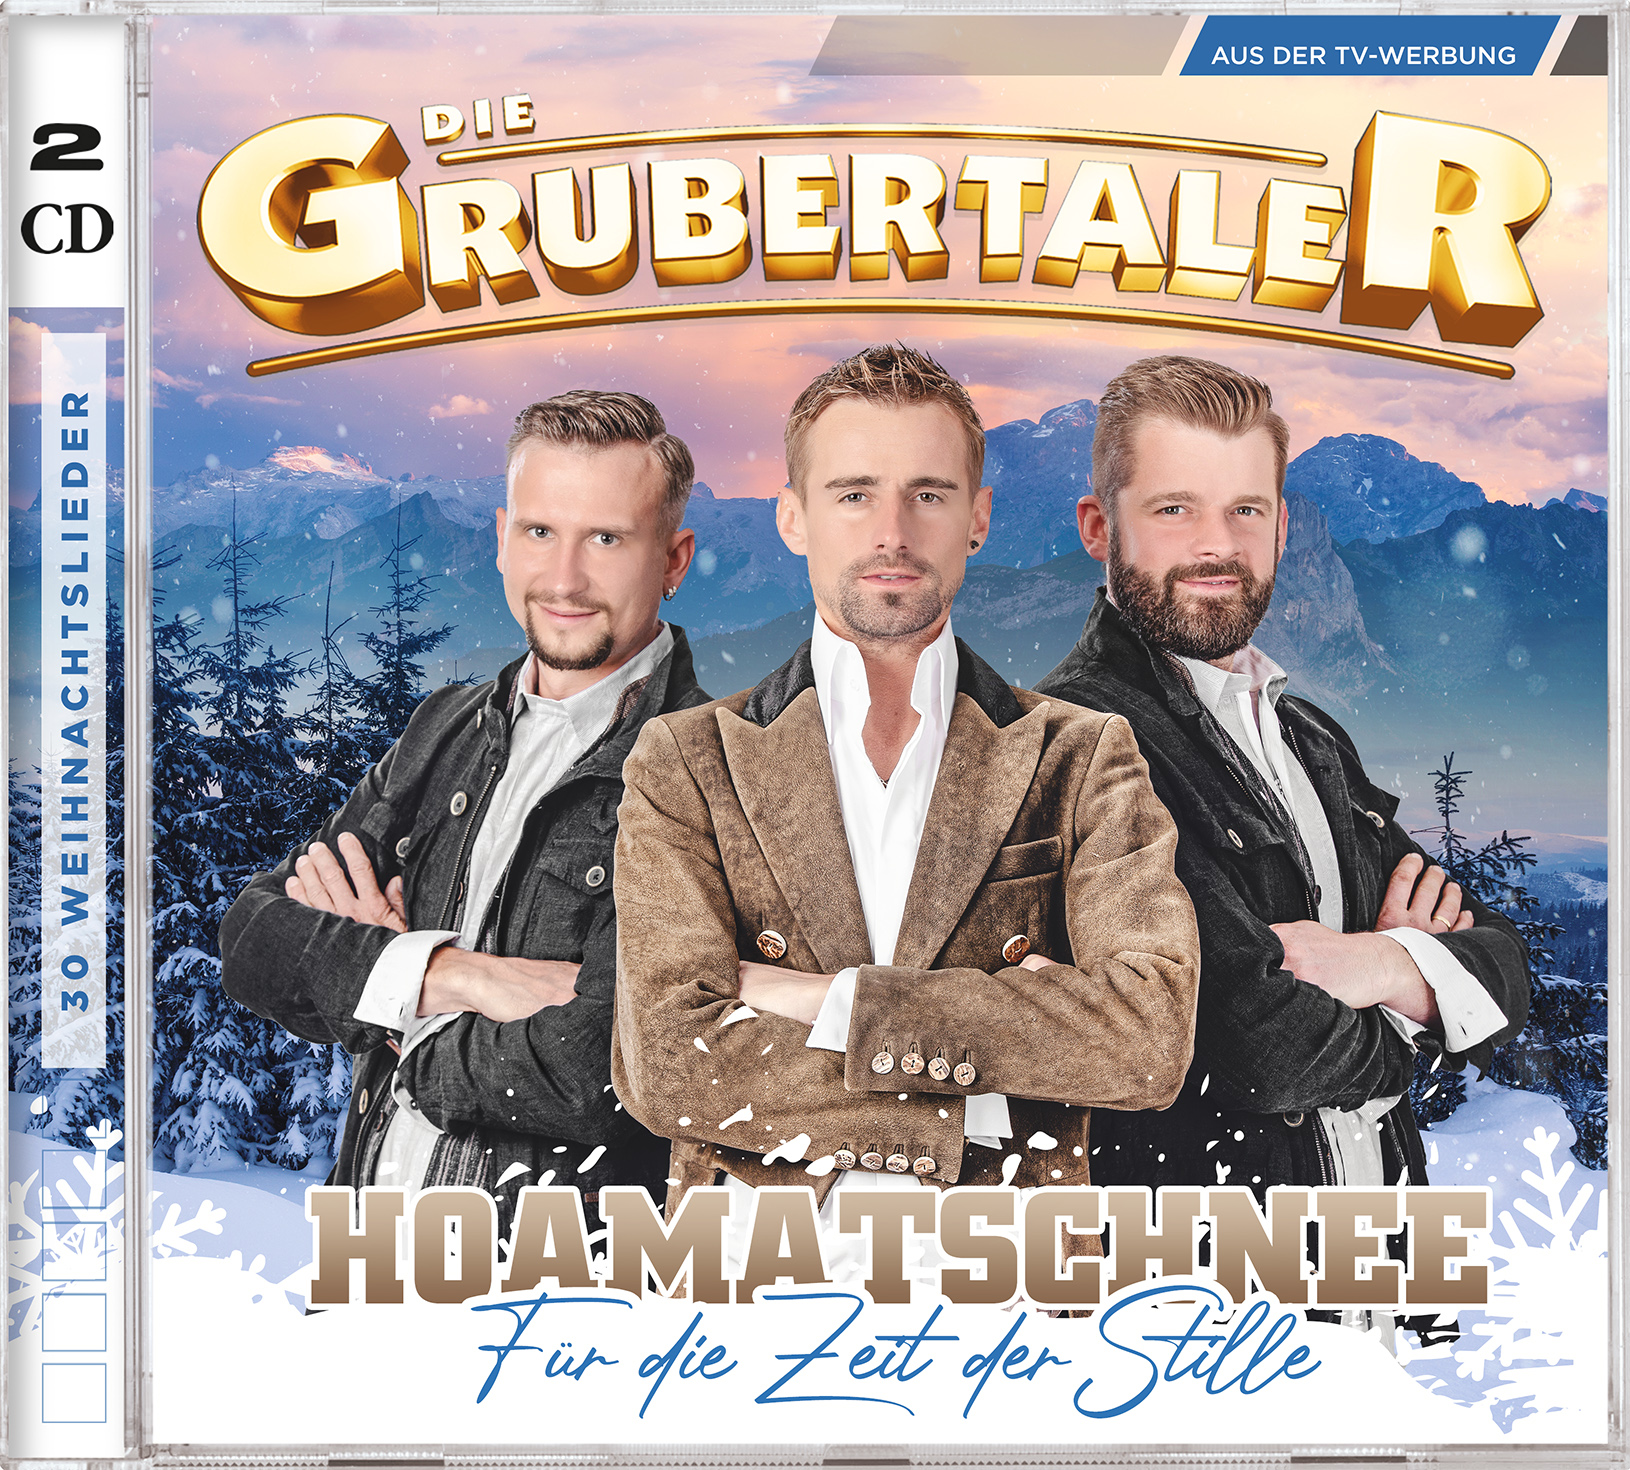 DIE GRUBERTALER * Hoatmatschnee (CD)